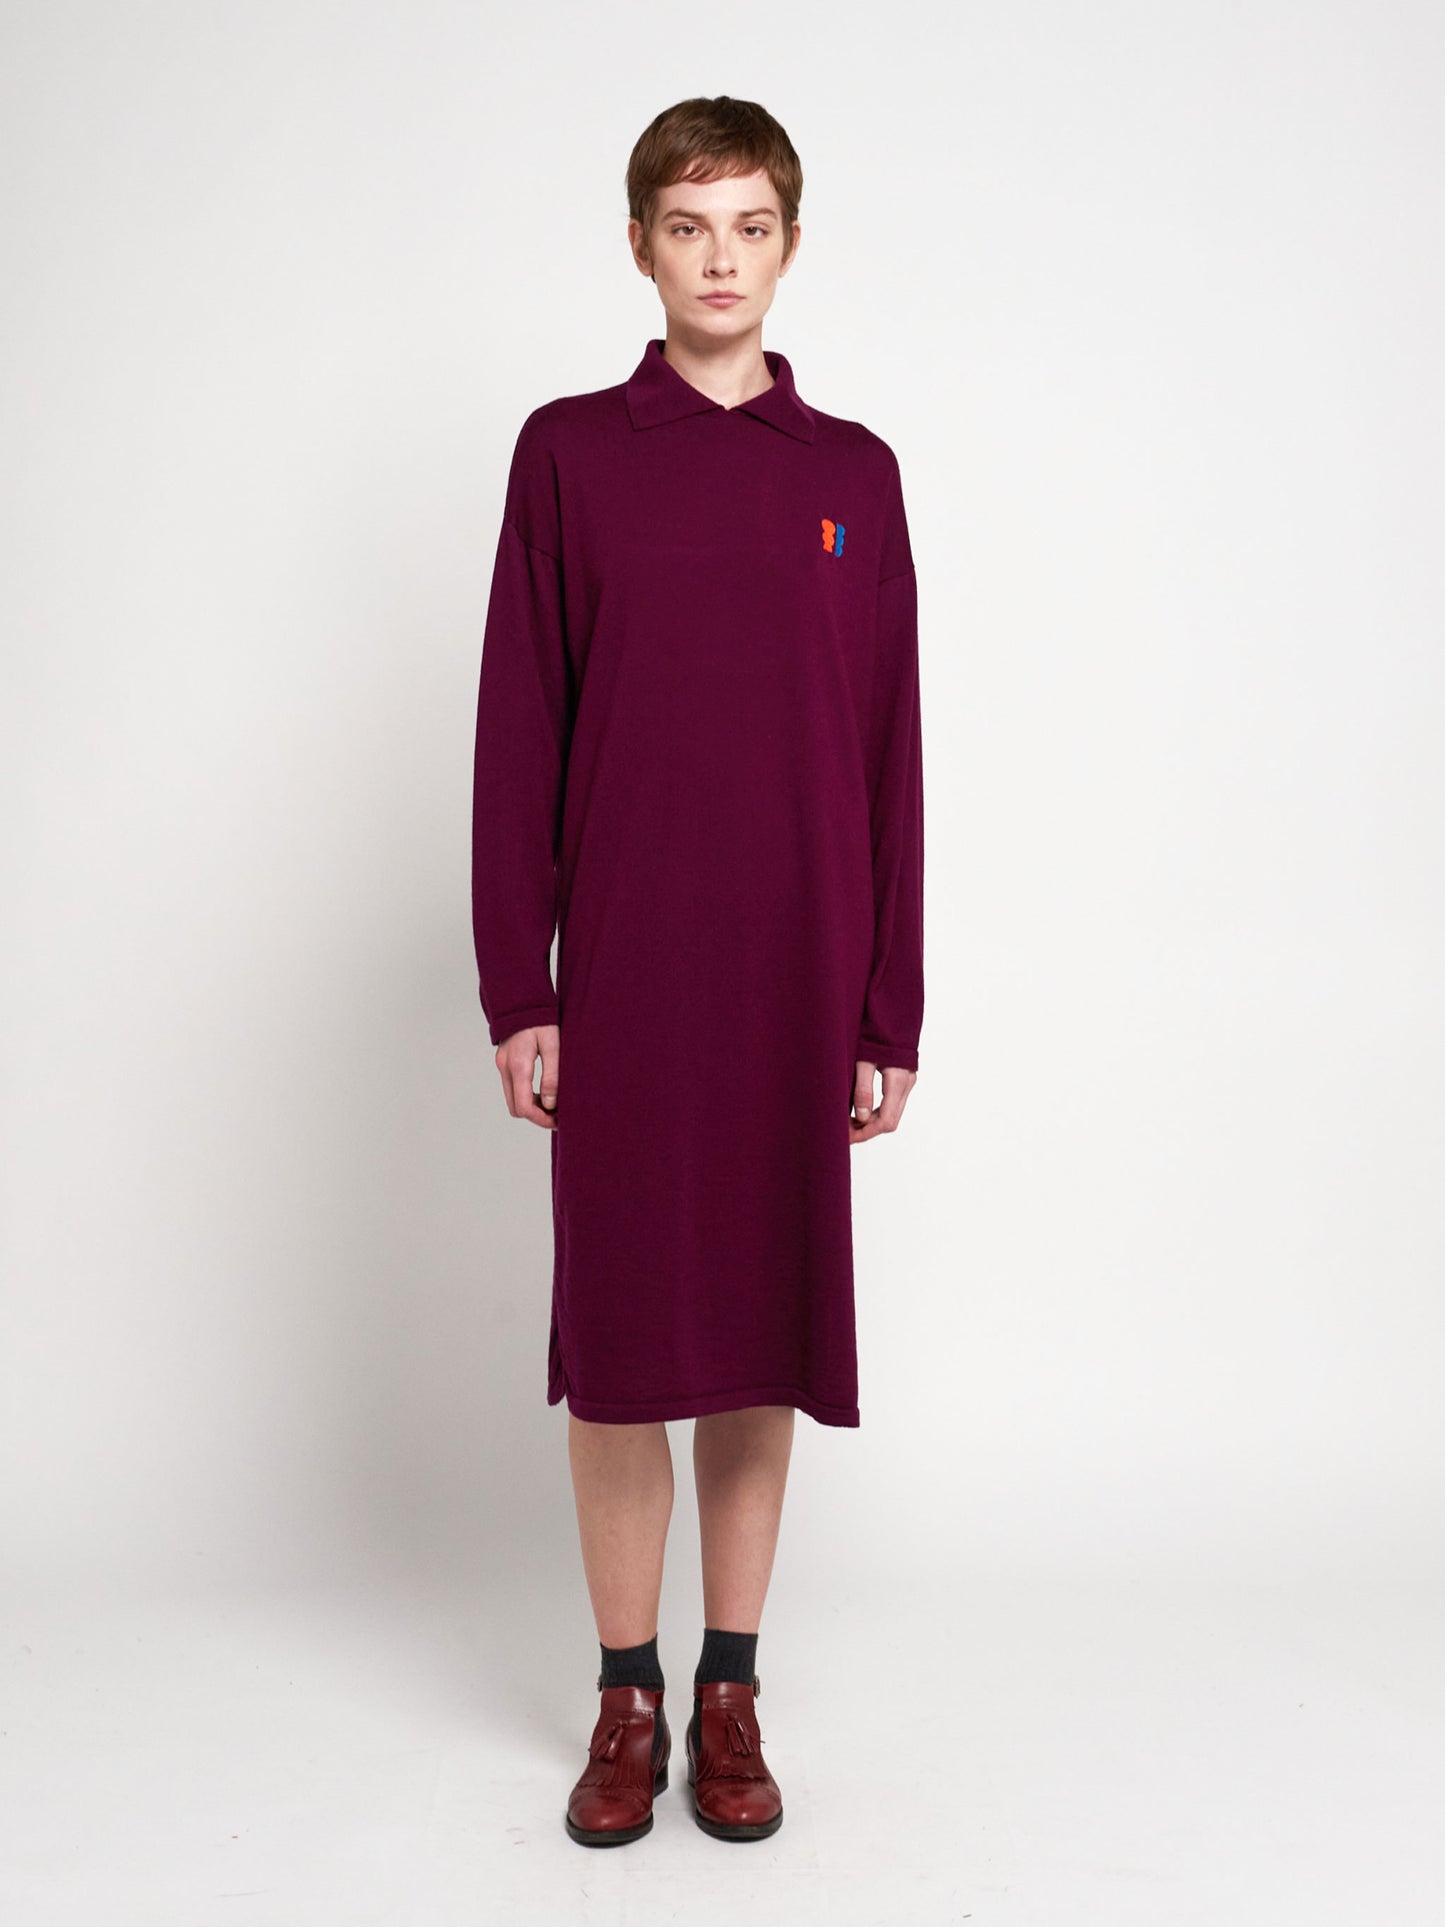 Merino wool knitted dress